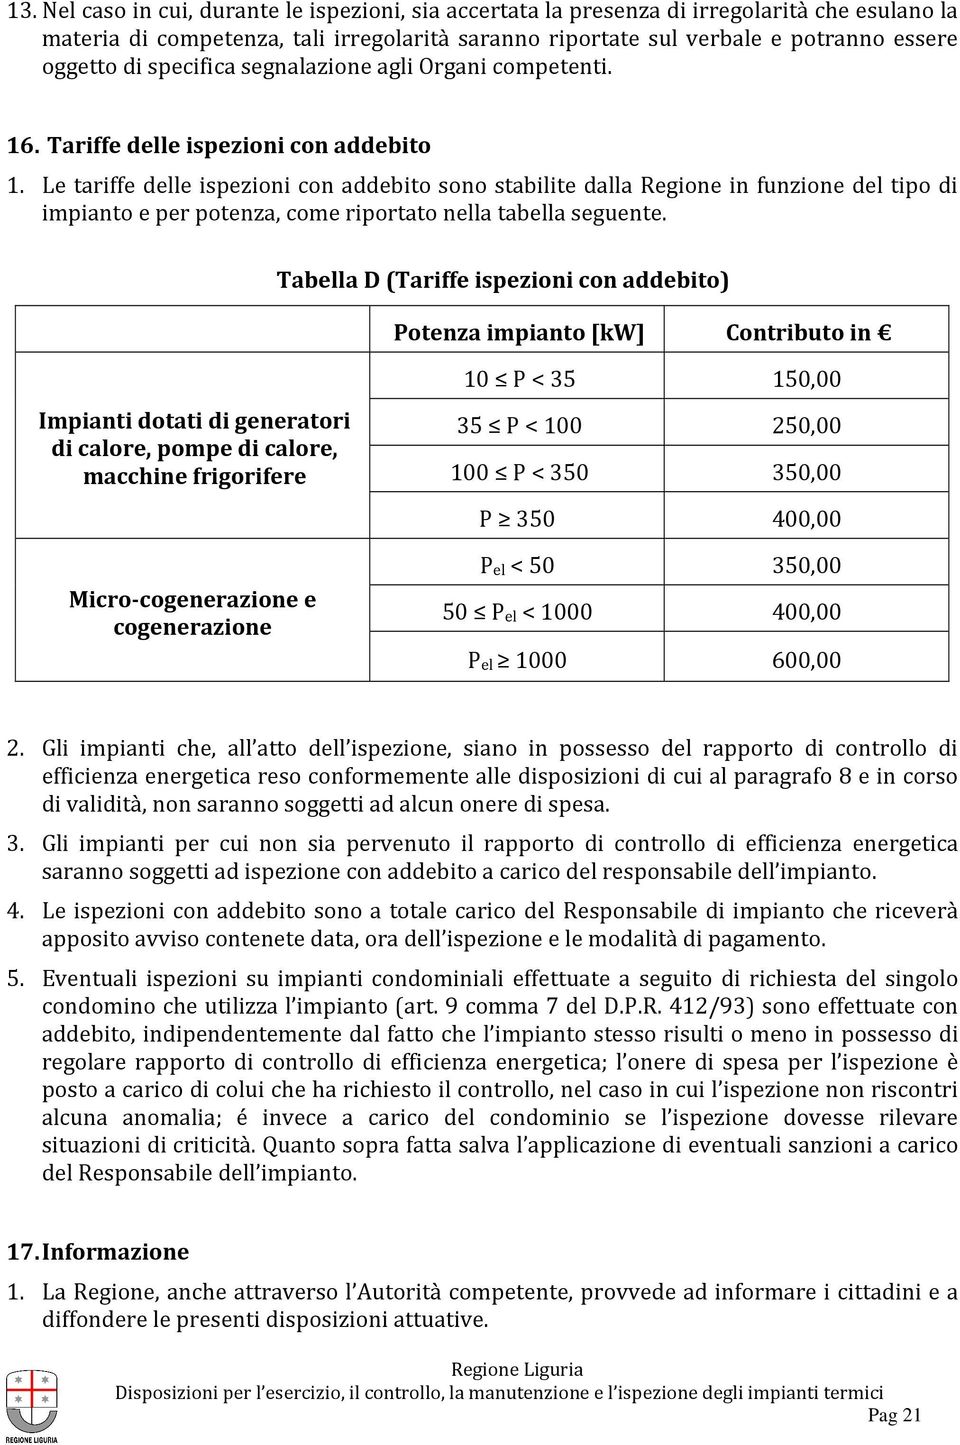 Le tariffe delle ispezioni con addebito sono stabilite dalla Regione in funzione del tipo di impianto e per potenza, come riportato nella tabella seguente.